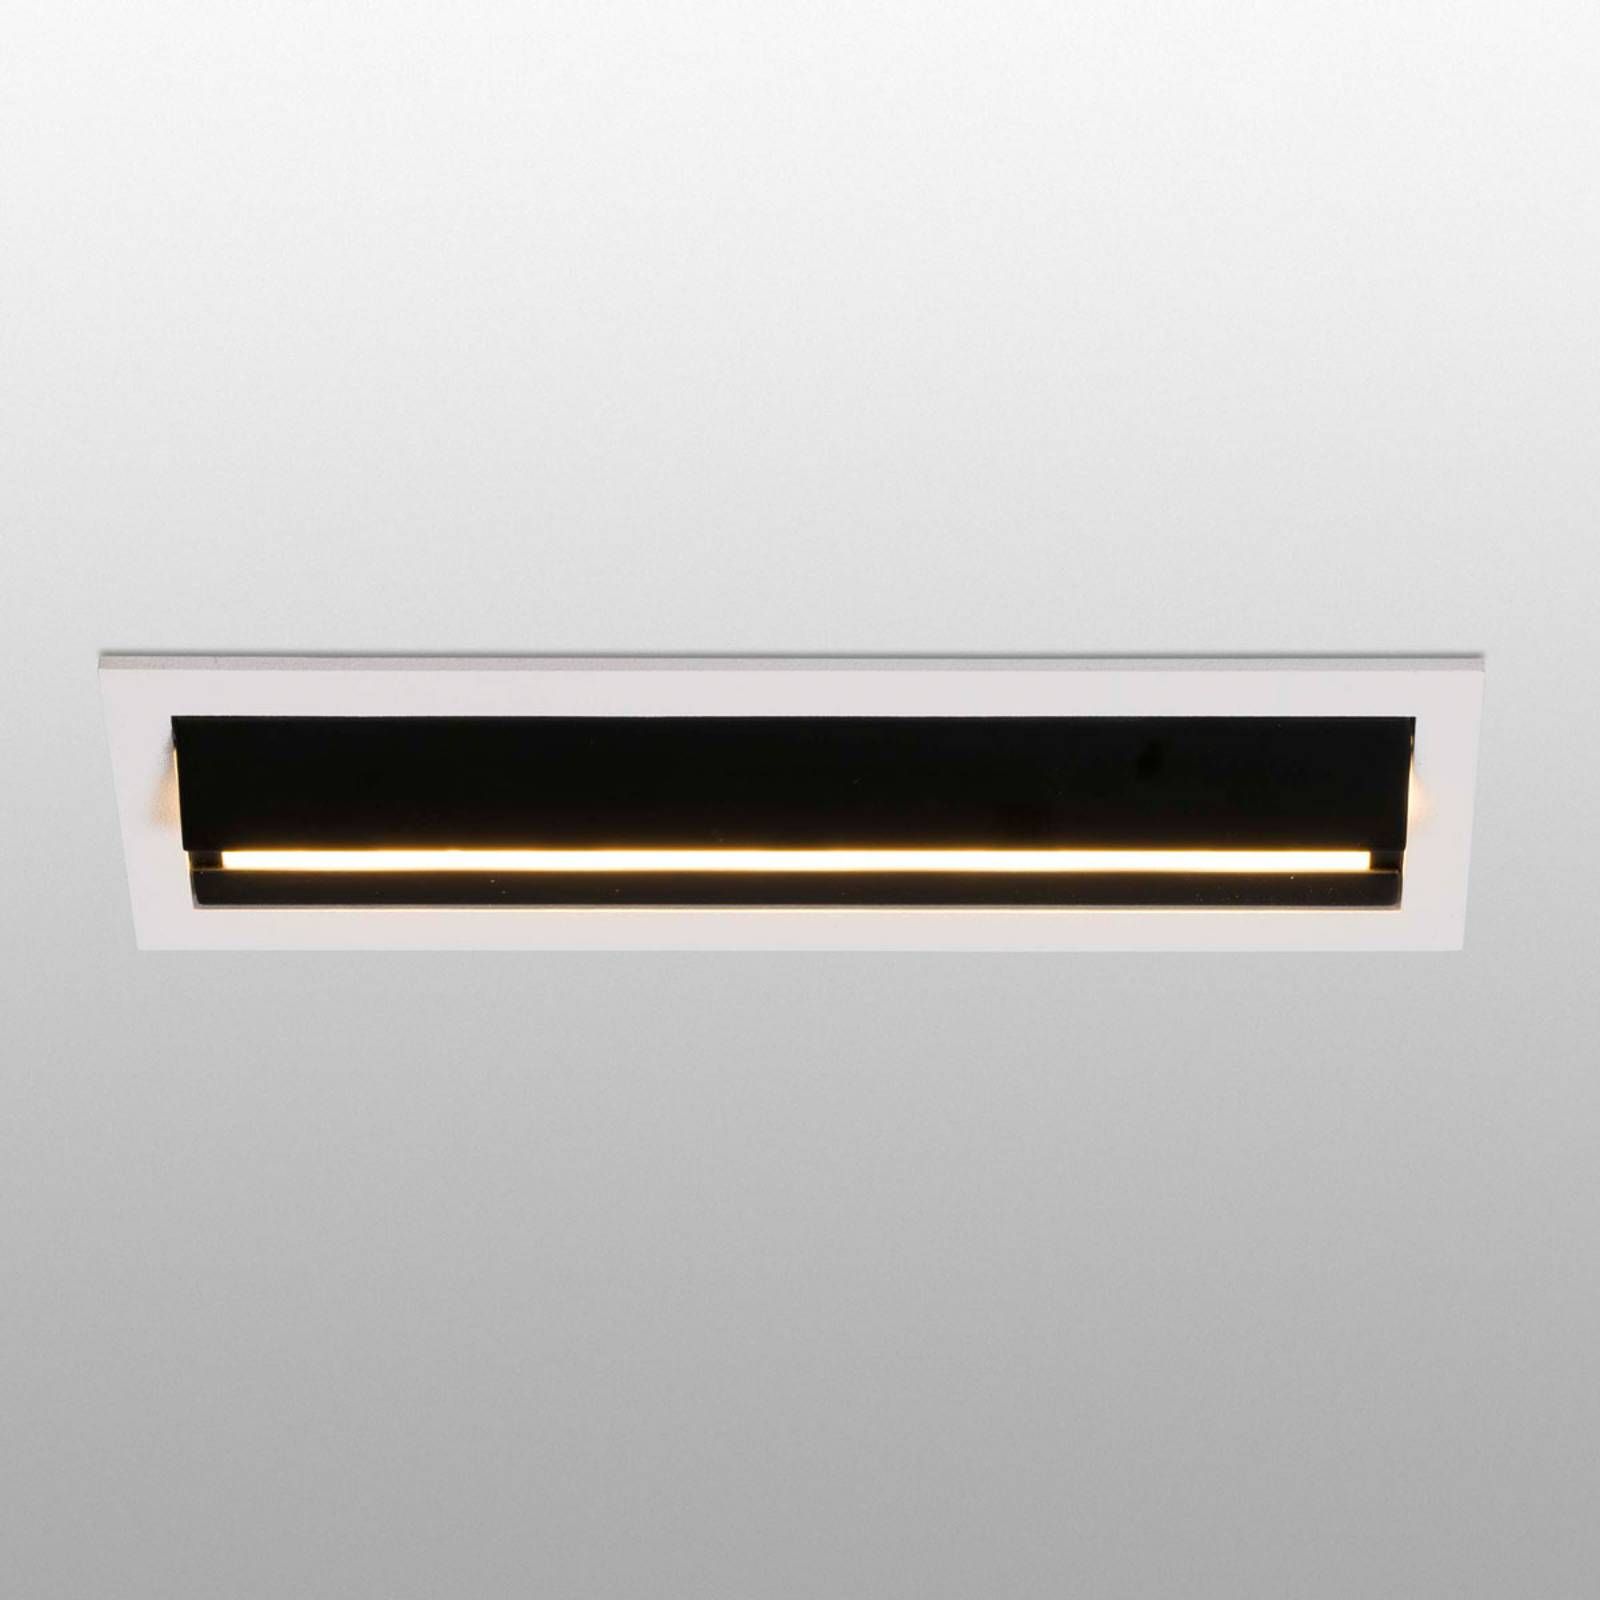 FARO BARCELONA LED-Wallwasher Troop, zapustené svetlo s rámom, Chodba, hliník, plast, 2W, P: 13.7 cm, L: 6 cm